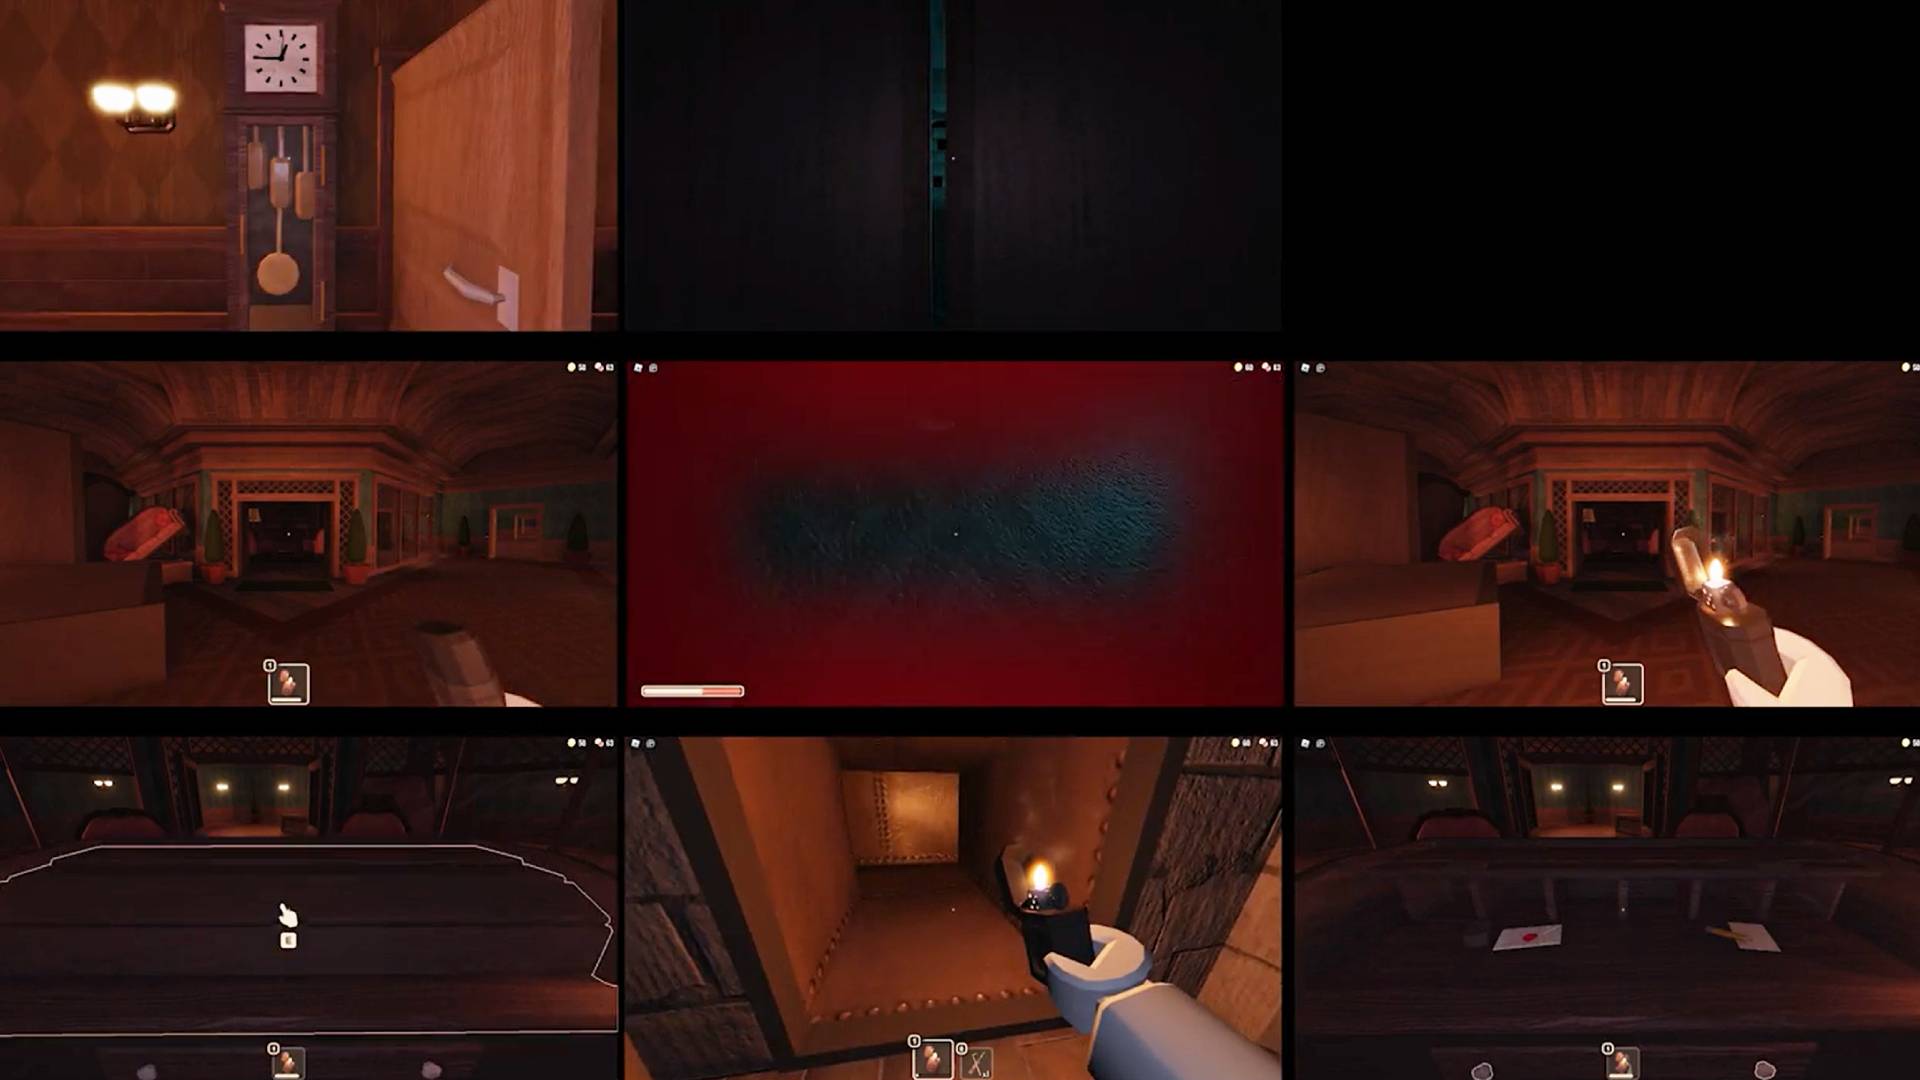 In the Roblox game Doors, is it possible to get Seek on a door